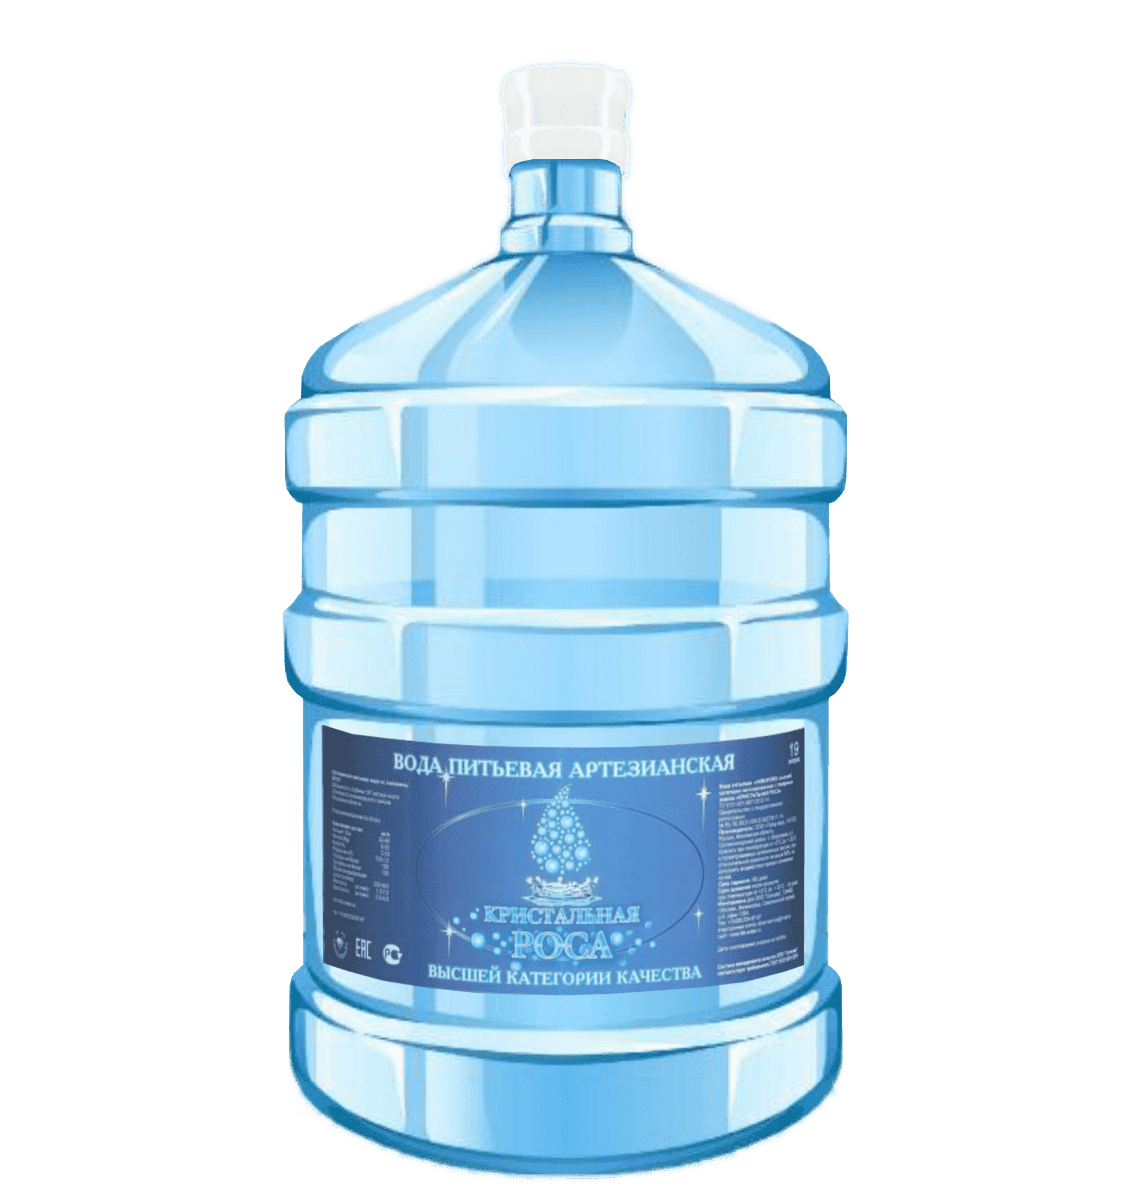 Бутилированная вода купить в москве. Кристальная вода 19л. Гидролайф 19л. Артезианская бутилированная вода. Бутылка воды 19 литров.